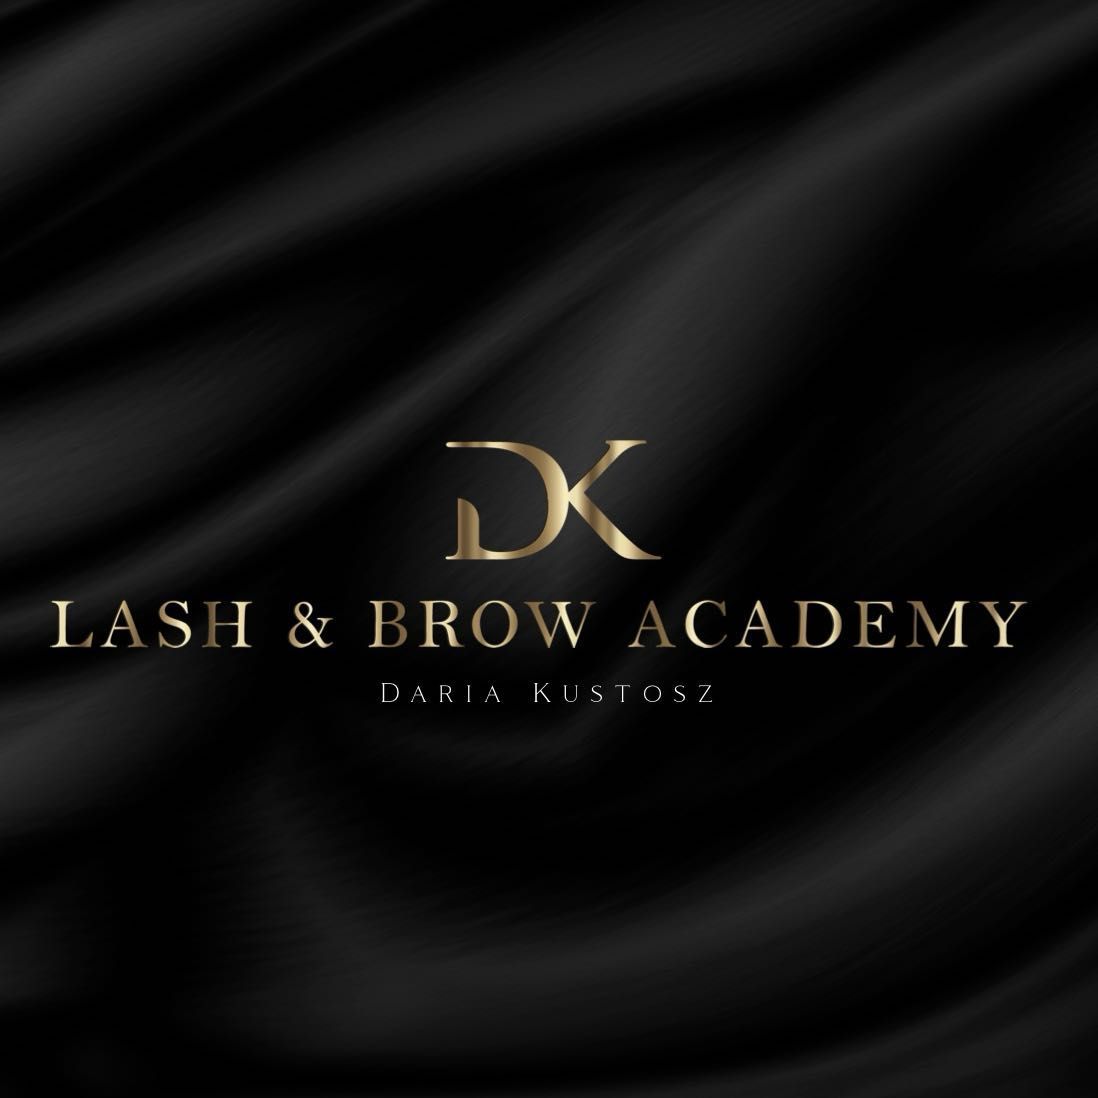 Lash&Brow Academy Daria Kustosz, Łabiszyńska 13, 86-061, Nowa Wieś Wielka